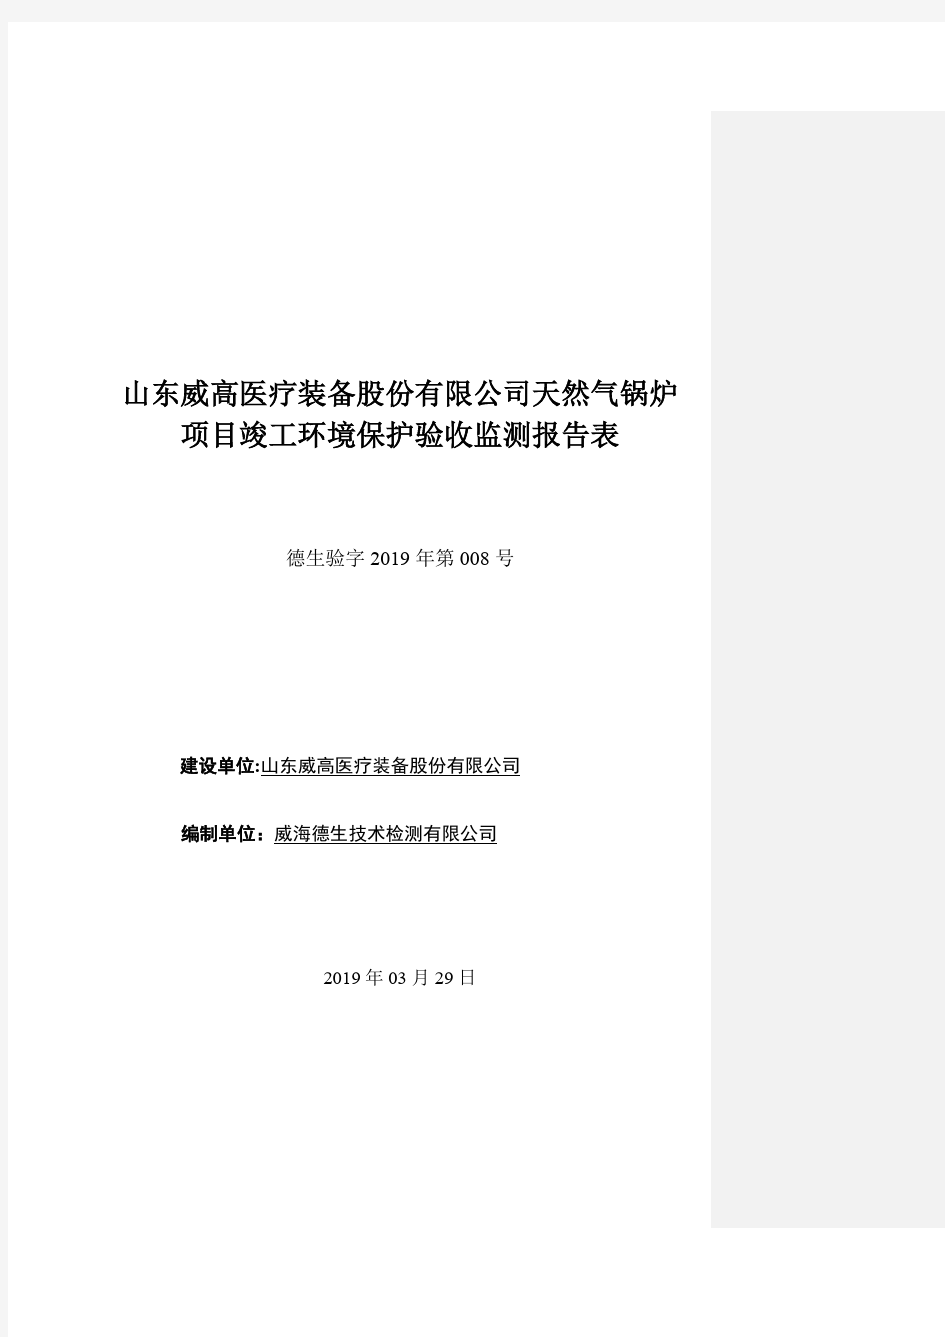 山东威高医疗装备股份有限公司天然气锅炉.pdf